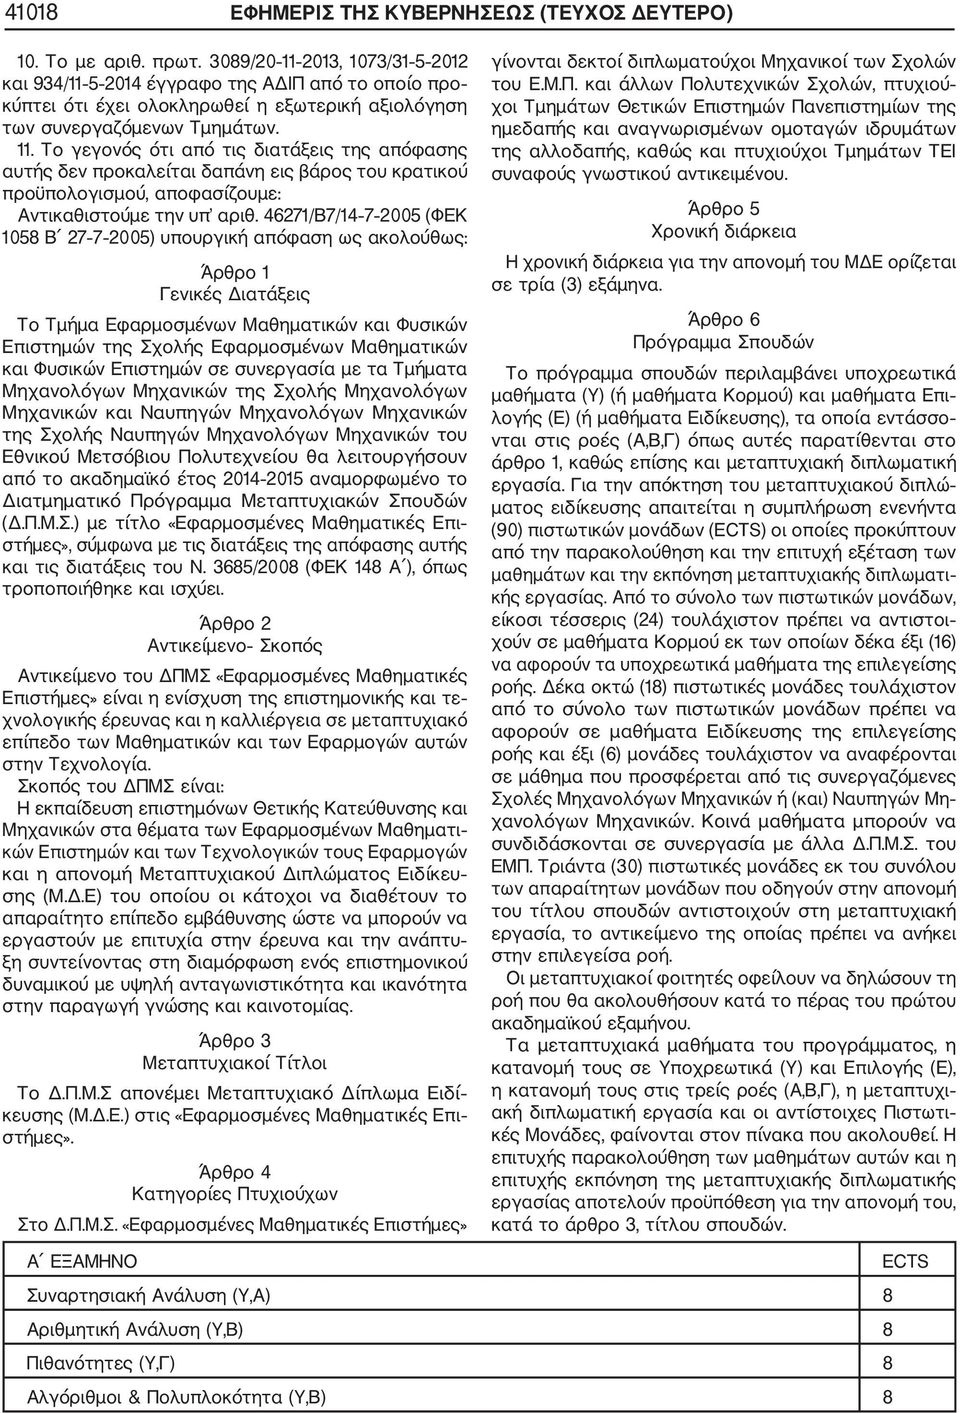 46271/Β7/14 7 2005 (ΦΕΚ 1058 Β 27 7 2005) υπουργική απόφαση ως ακολούθως: Άρθρο 1 Γενικές Διατάξεις Το Τμήμα Εφαρμοσμένων Μαθηματικών και Φυσικών Επιστημών της Σχολής Εφαρμοσμένων Μαθηματικών και